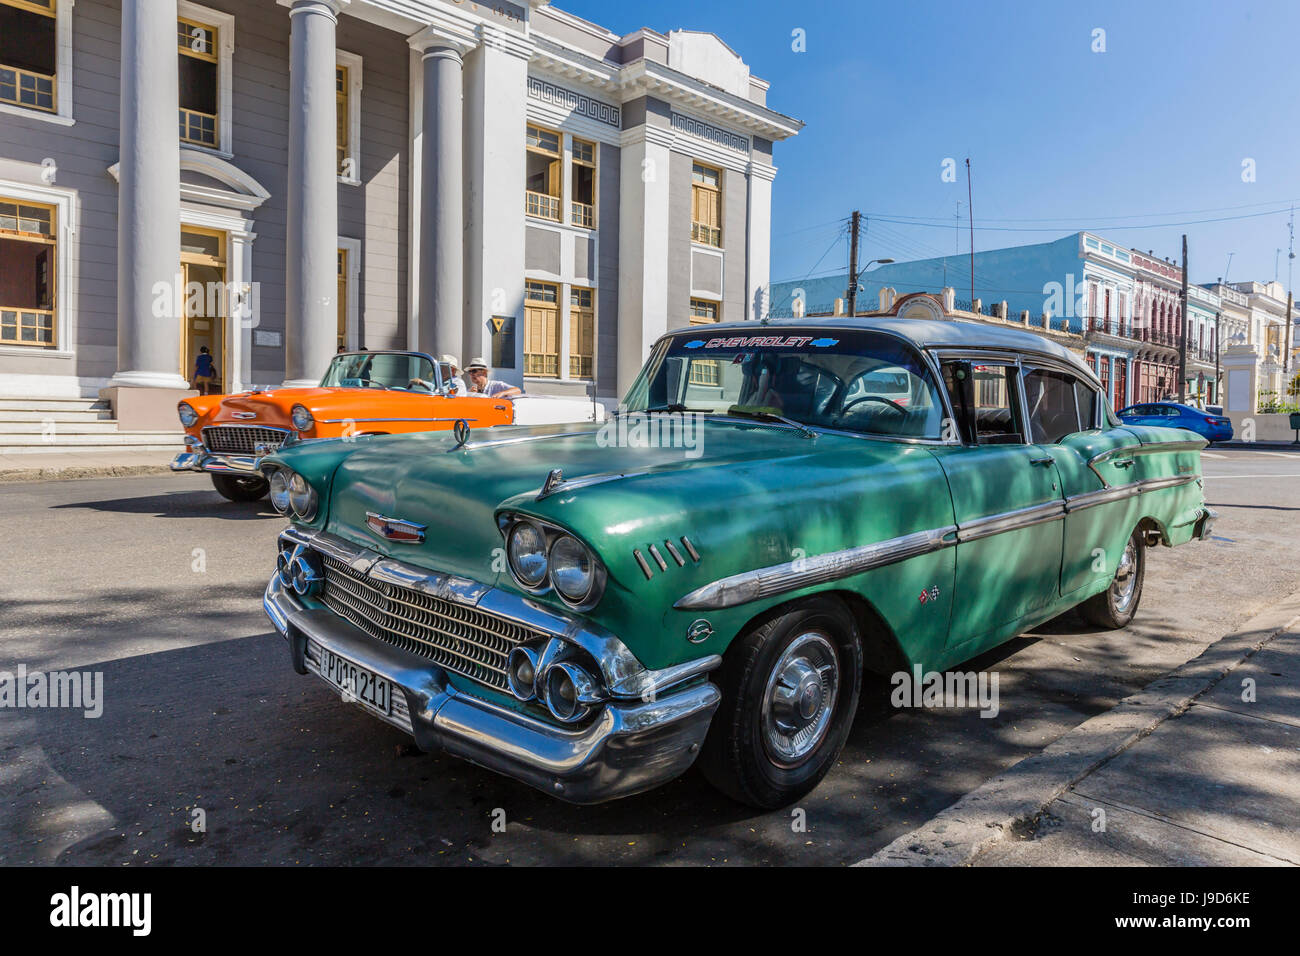 Classic 1958 Chevrolet Bel Air Taxi, localement appelé une almendrone dans la ville de Cienfuegos, Cuba, Antilles, Caraïbes Banque D'Images